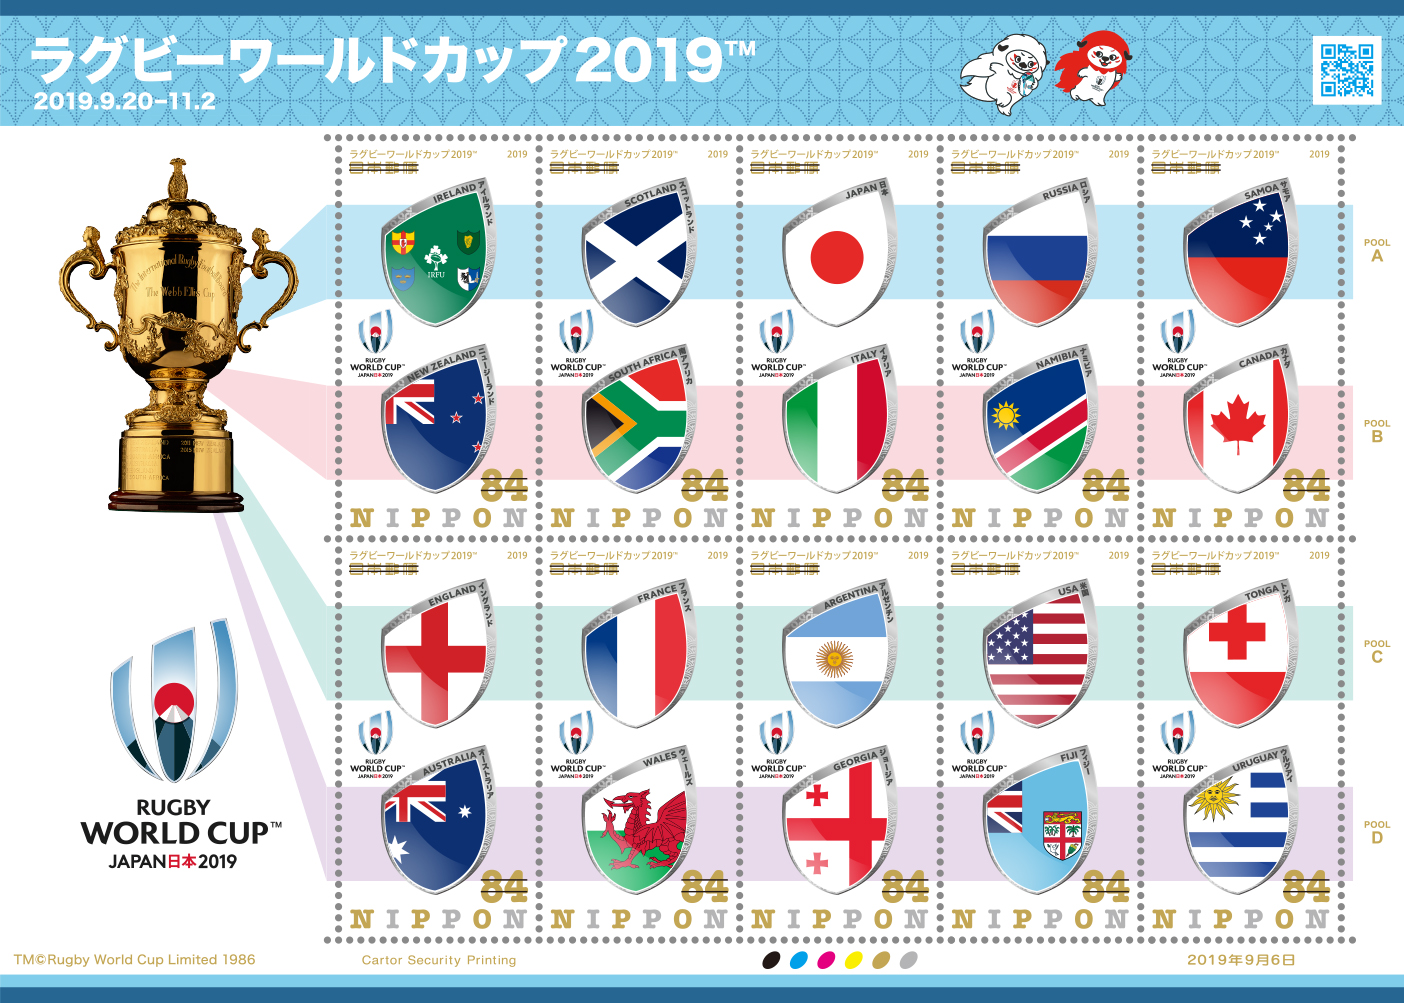 2019年9月6日発売郵便局限定『ラグビーワールドカップ 2019™』│郵便 